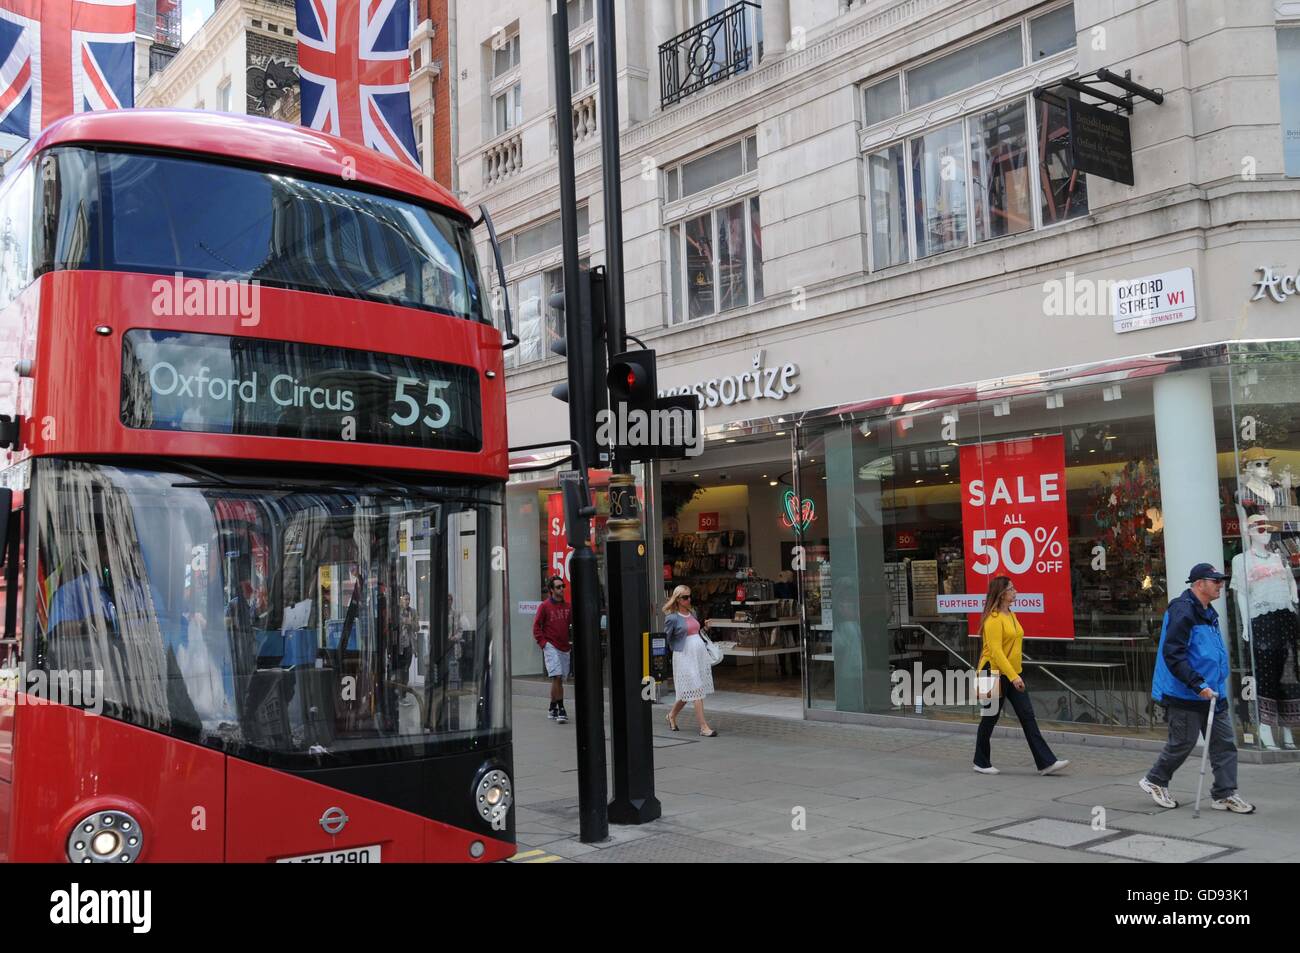 Le maire de Londres, Sadiq Khan, va créer une zone piétonne Oxford Street ; dans la rue du même nom dans l'est, jusqu'à Bond Street à l'Ouest. L'objectif est de nettoyer les rues record pour la mauvaise qualité de l'air : le pire dans le monde. Le programme entrera en vigueur en 2020 Banque D'Images